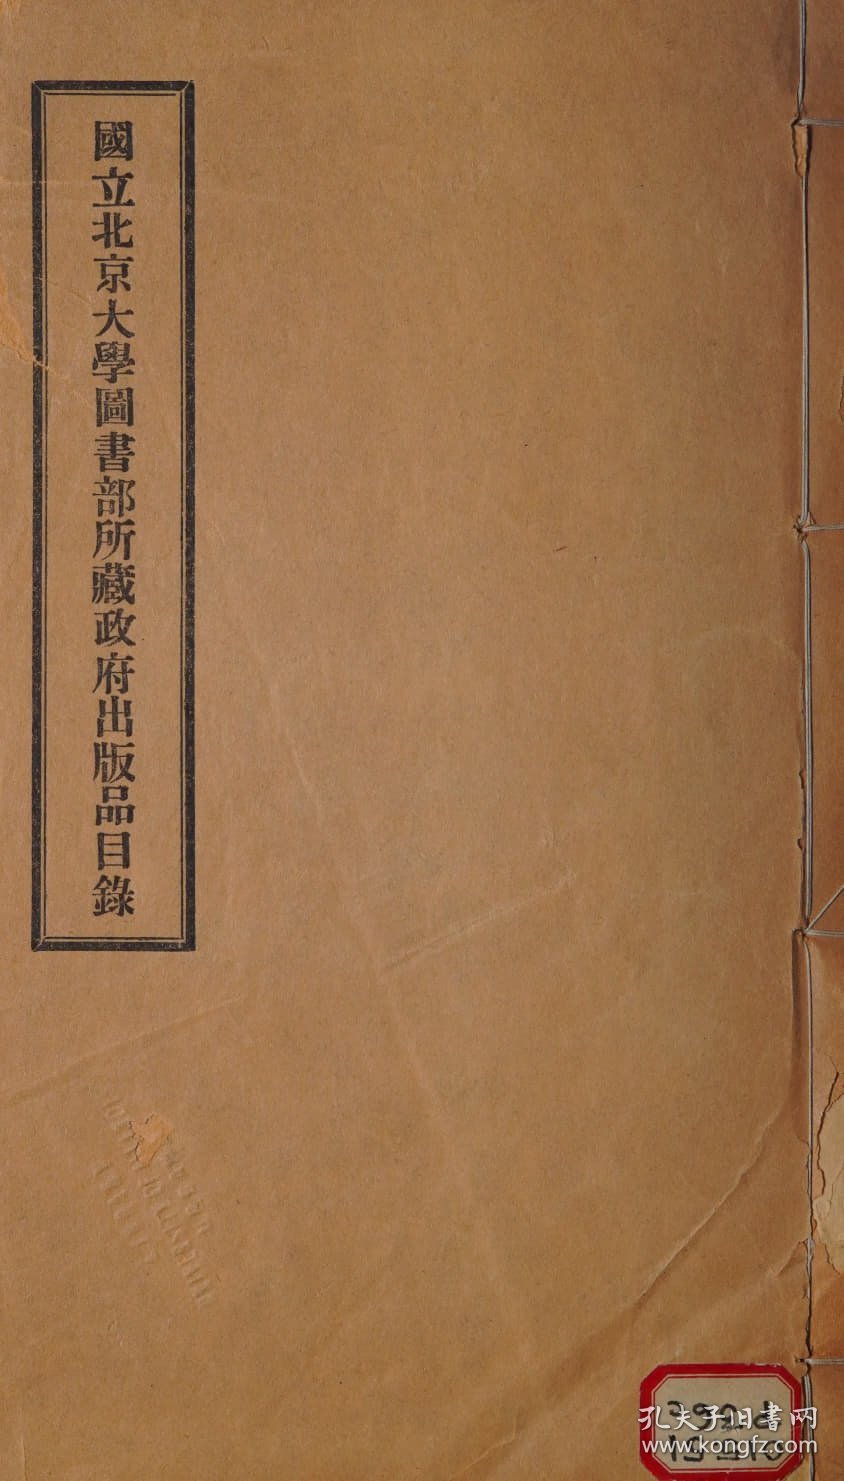 【提供资料信息服务】 国立北京大学图书部所藏政府出版品目录（中文版） catalogue of the Chinese government publications in the library 1922年